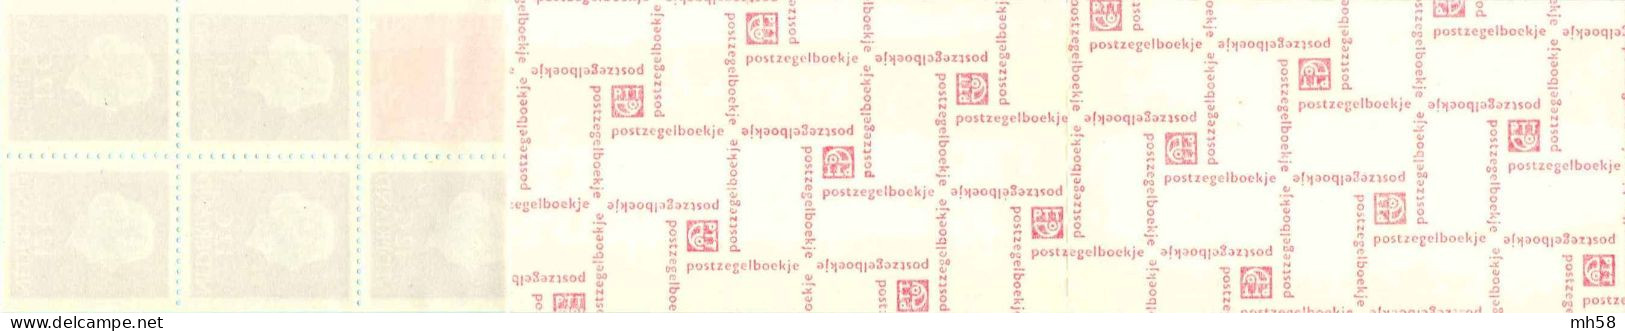 PAYS-BAS NEDERLAND 1969 - Carnet / Booklet / MH Sans Indice - 1 G Chiffre / Juliana - YT C 600AcB / MI MH 8y - Carnets Et Roulettes